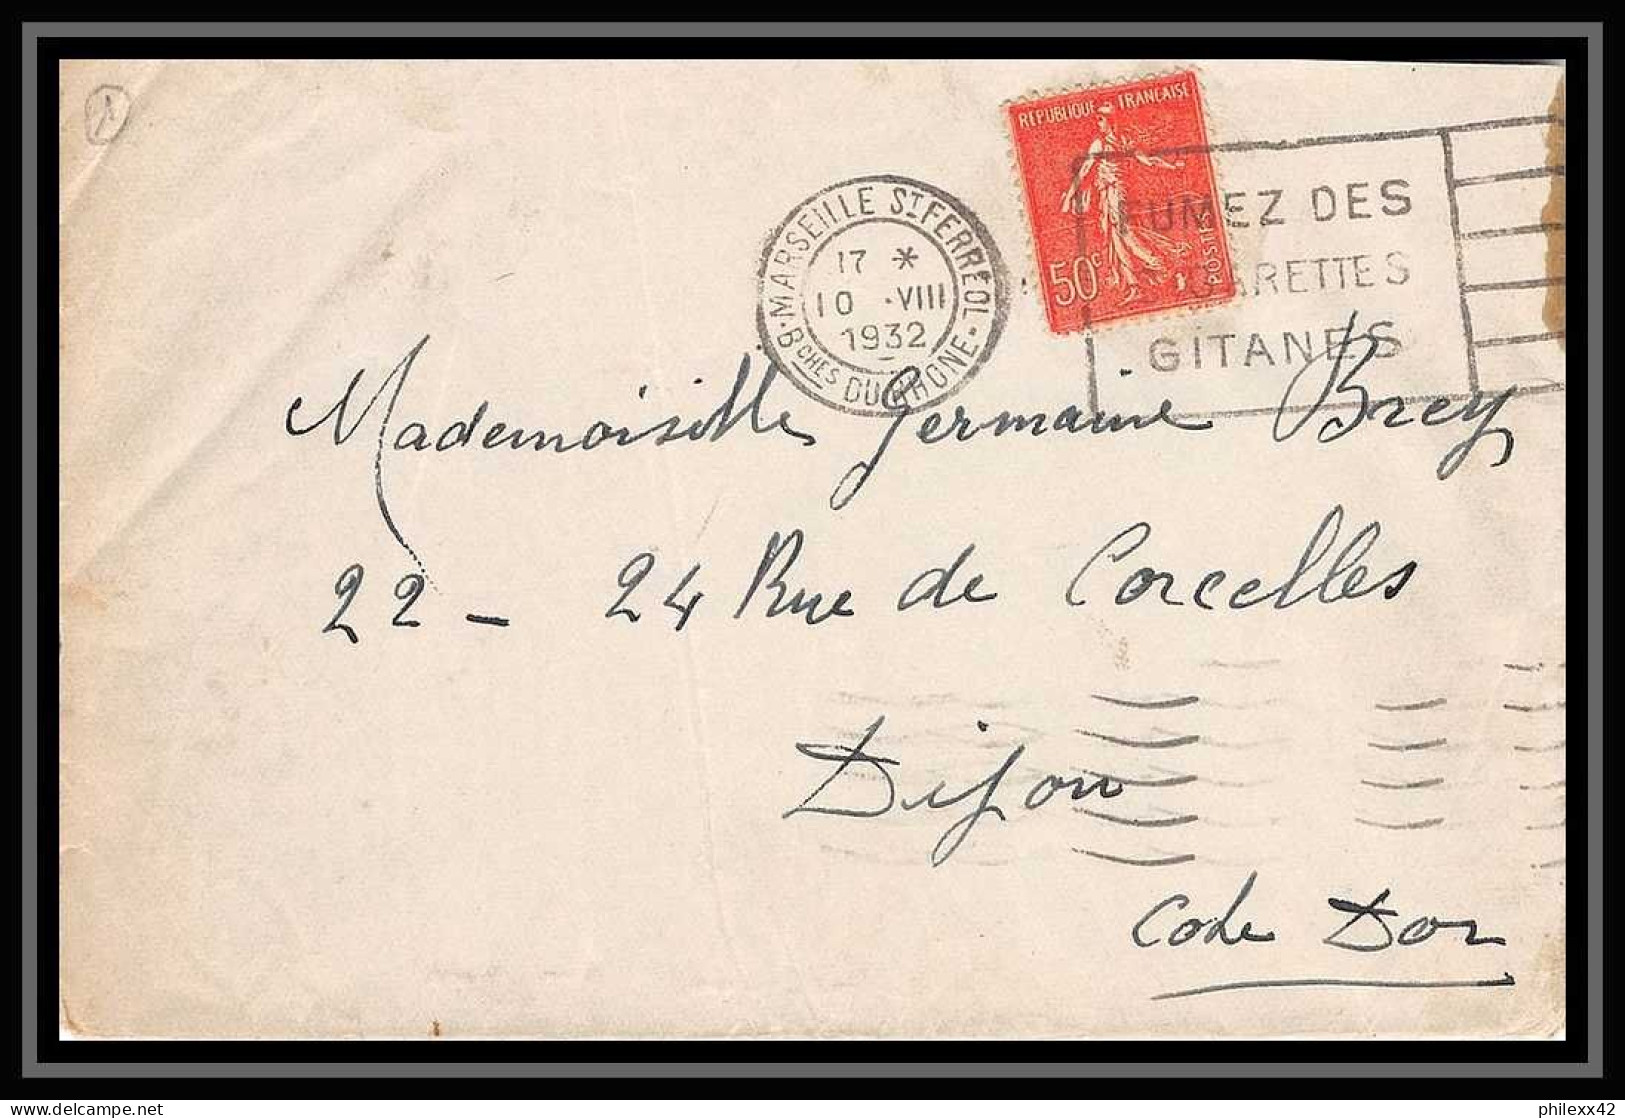 108424 lot de 20 Lettres Bouches du rhone Marseille saint ferréol